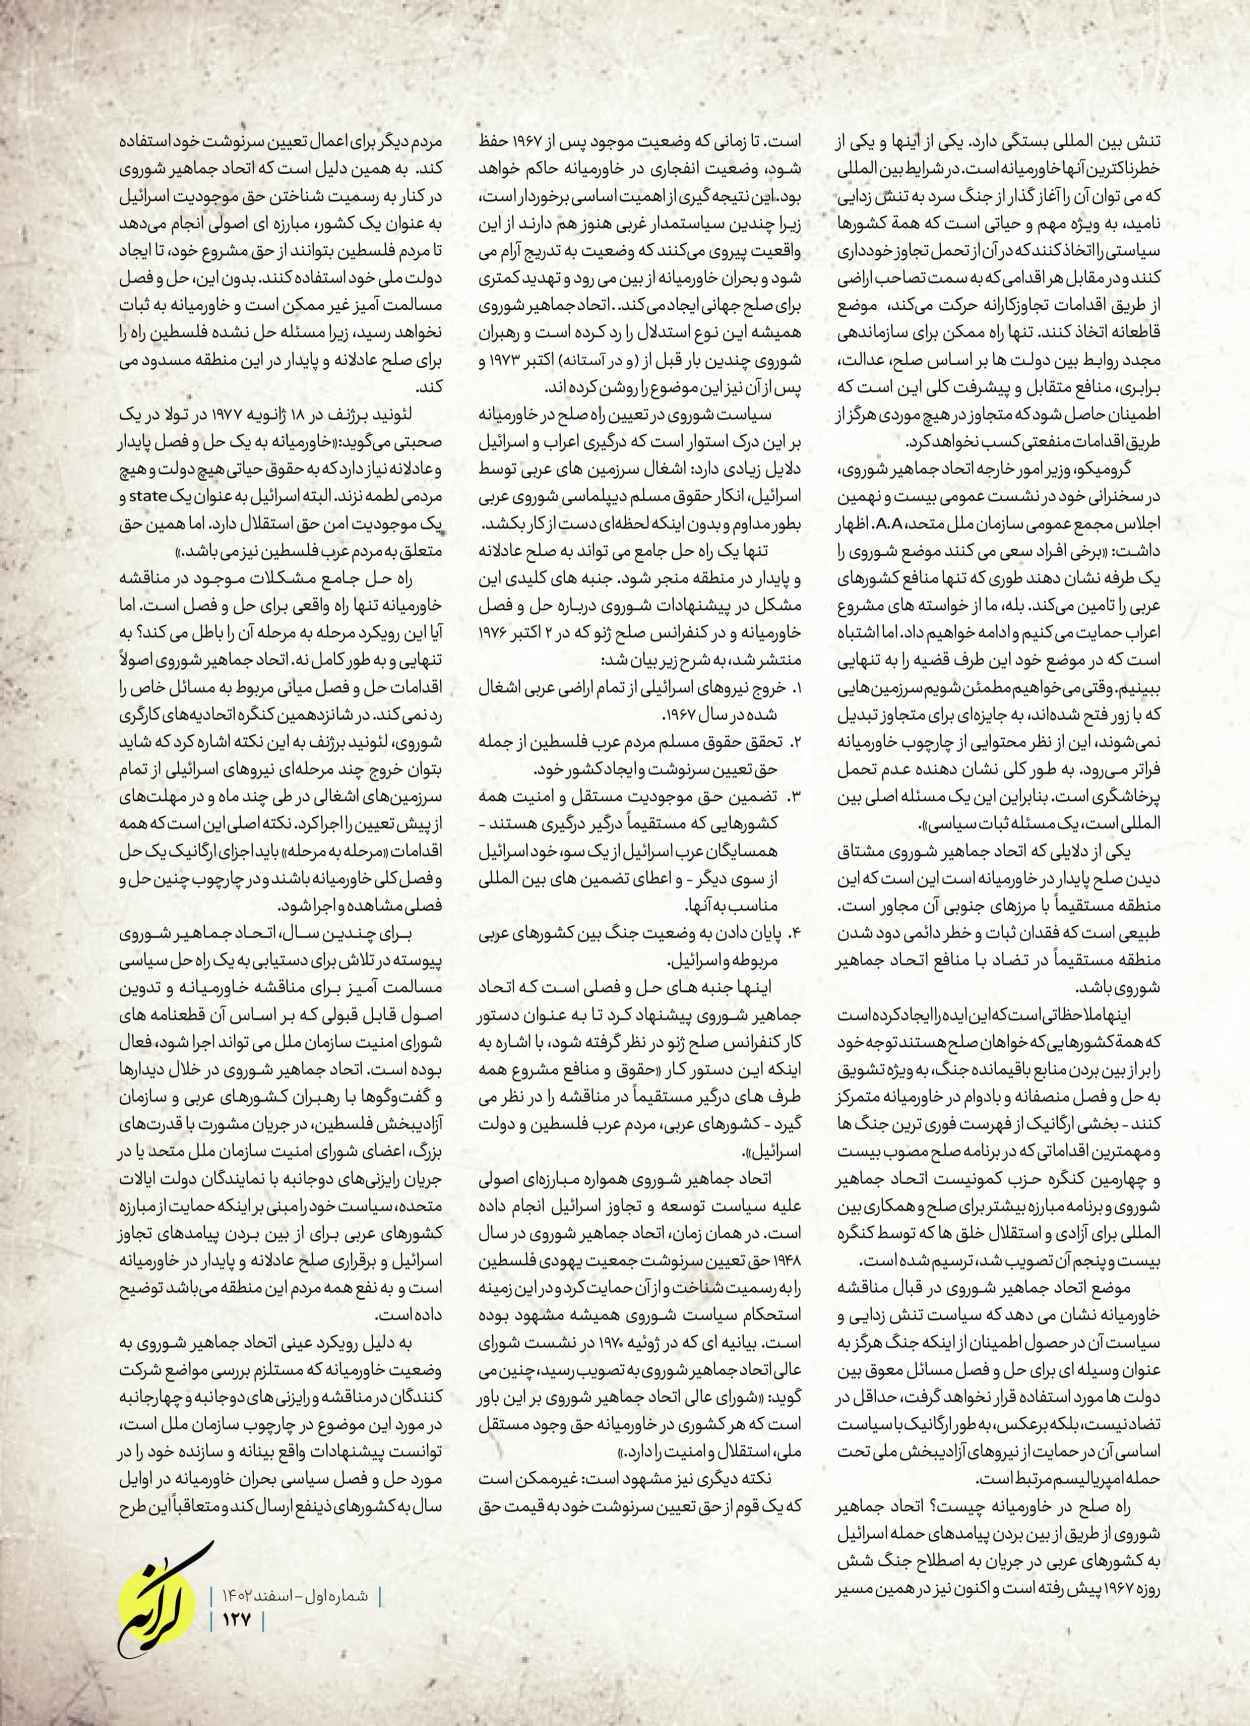 روزنامه ایران - ویژه نامه کرانه ۱ - ۲۶ اسفند ۱۴۰۲ - صفحه ۱۲۷